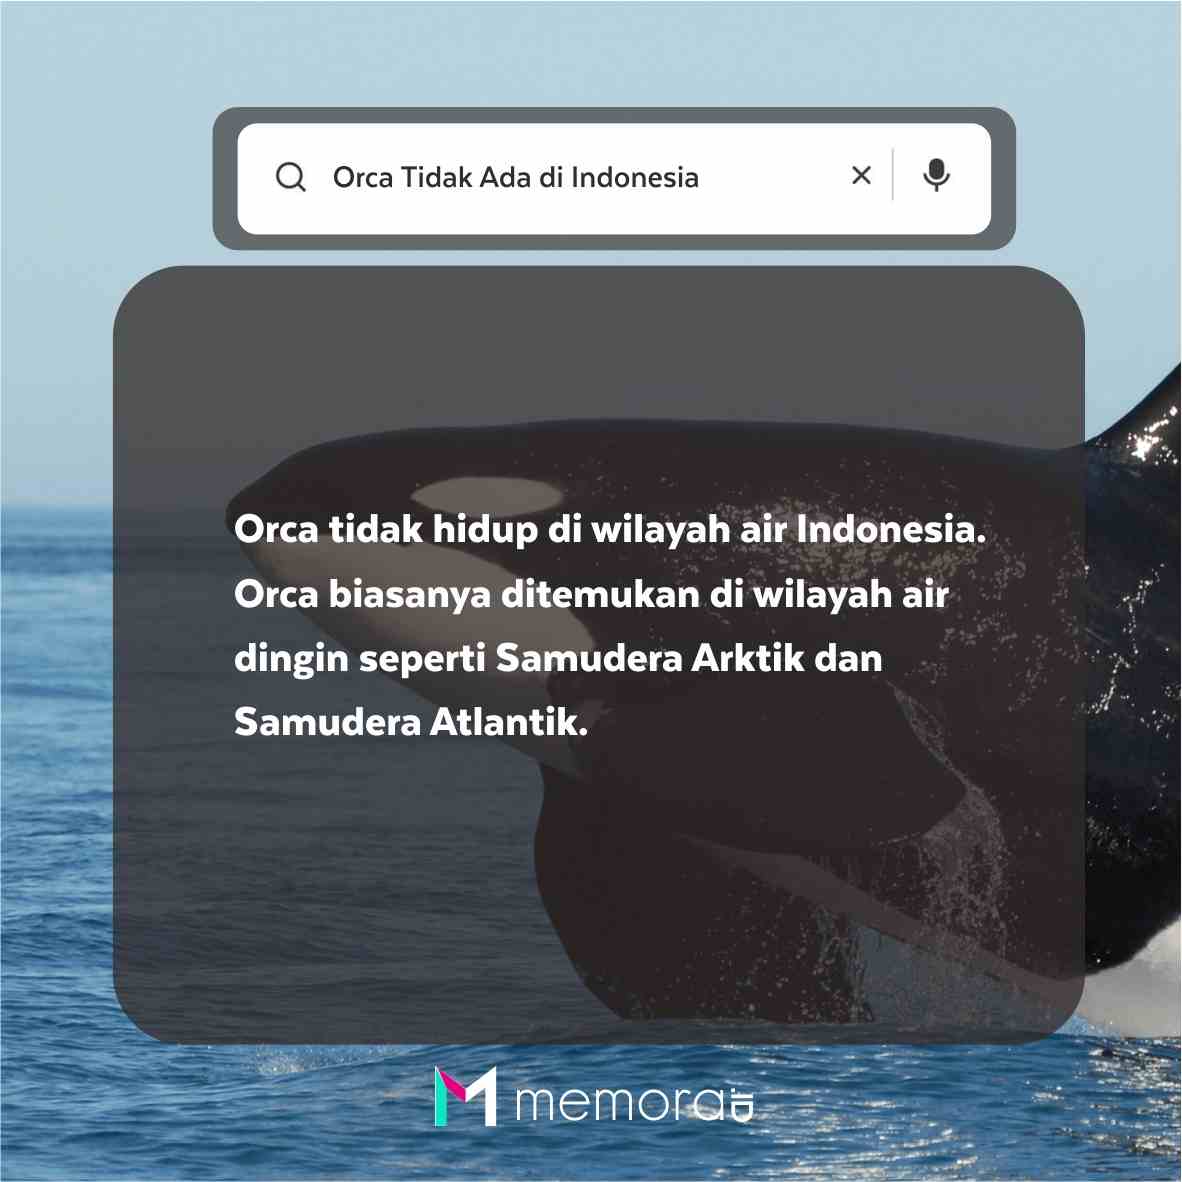 Apakah Orca Ada di Indonesia?